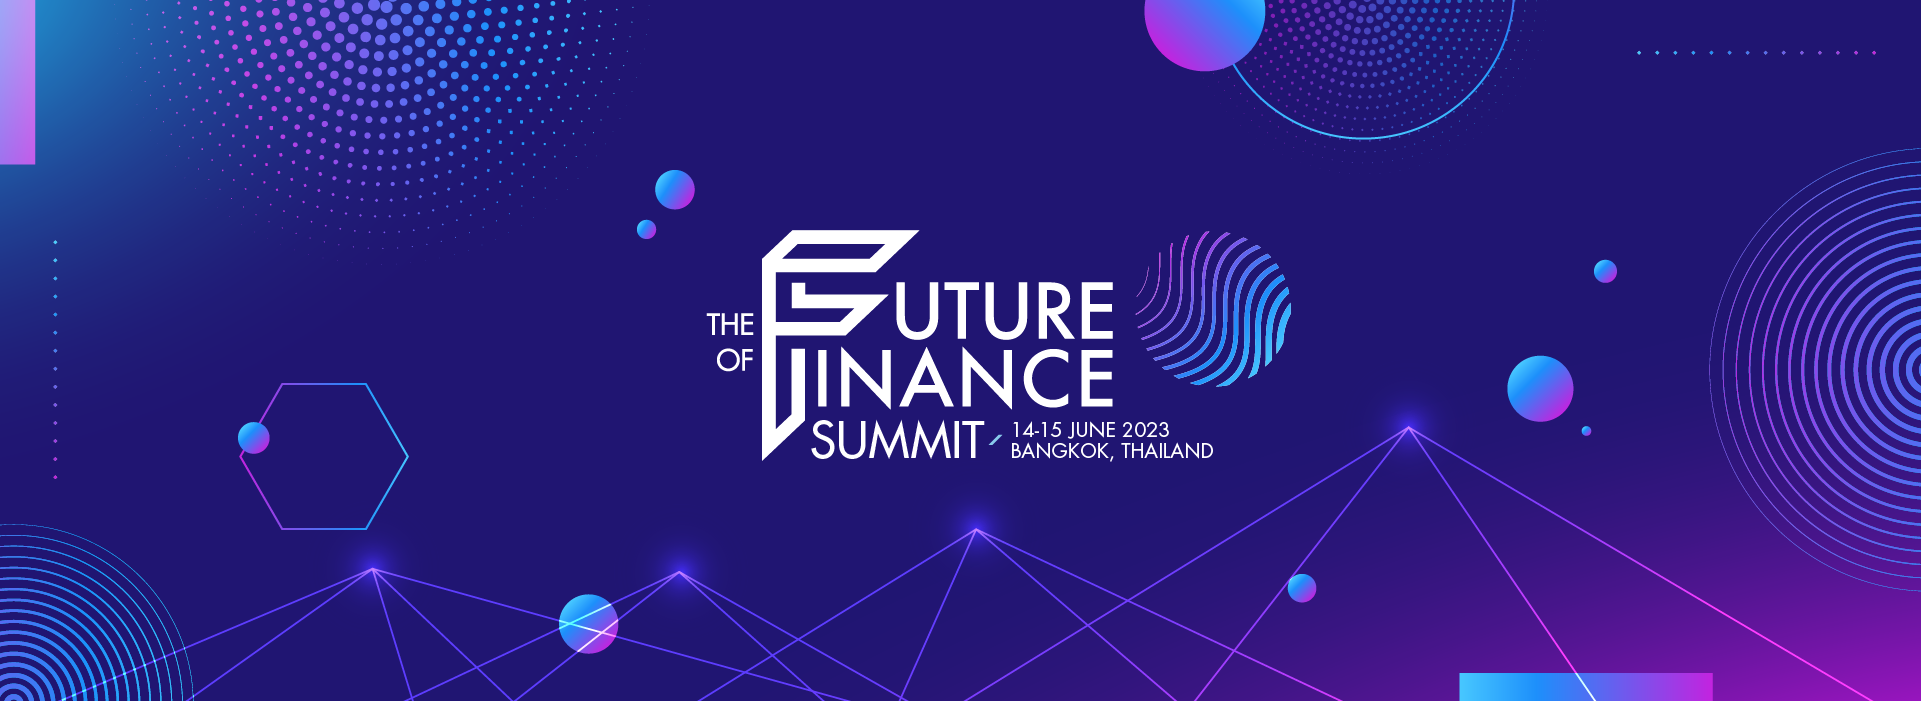 The Future of Finance Summit 2023 Speaker